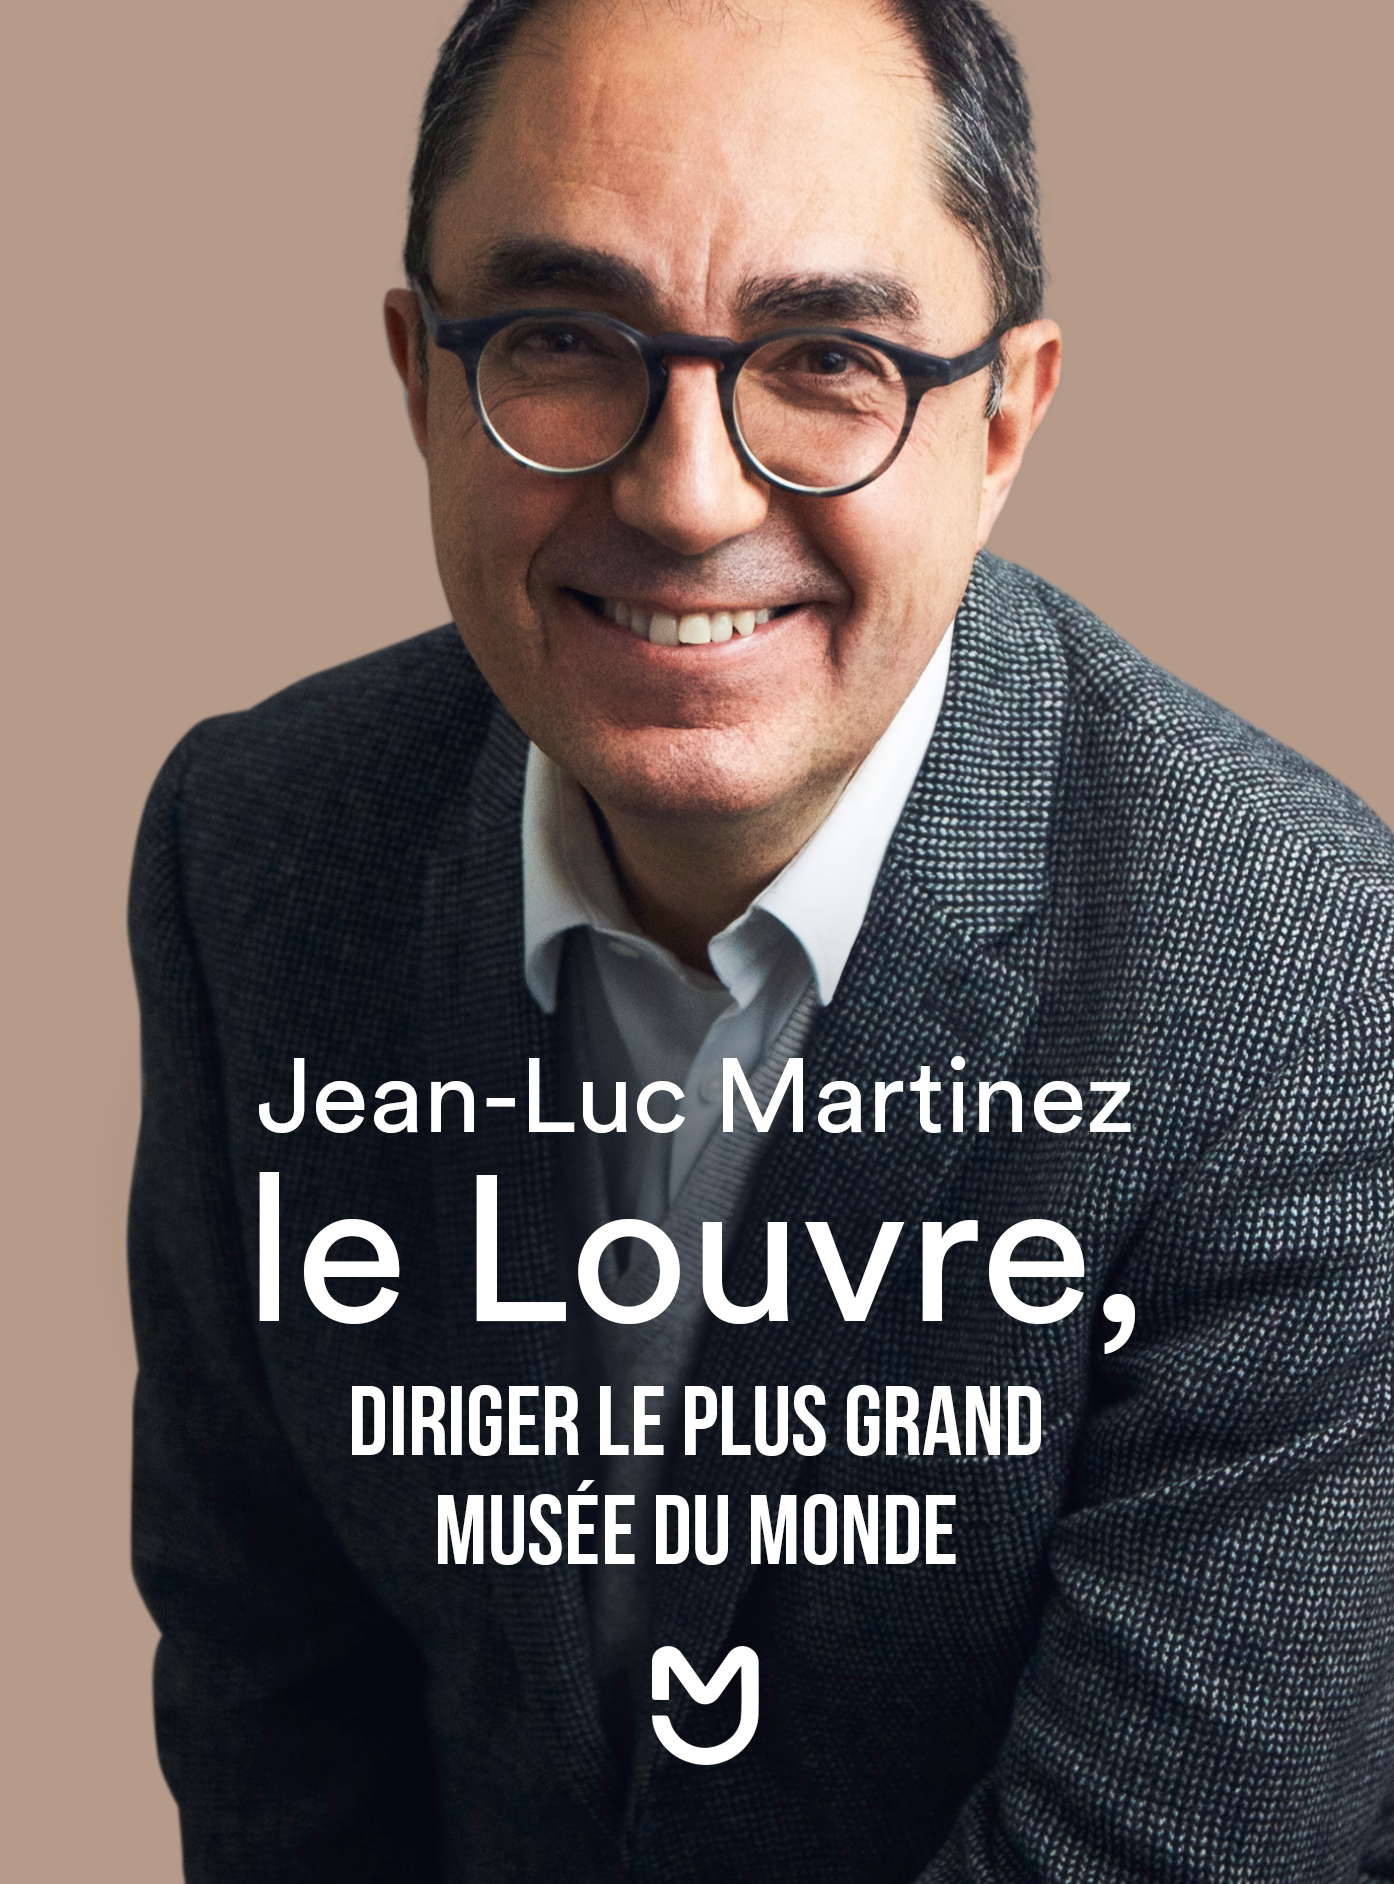 Jean-Luc Martinez, diriger le plus grand musée du monde